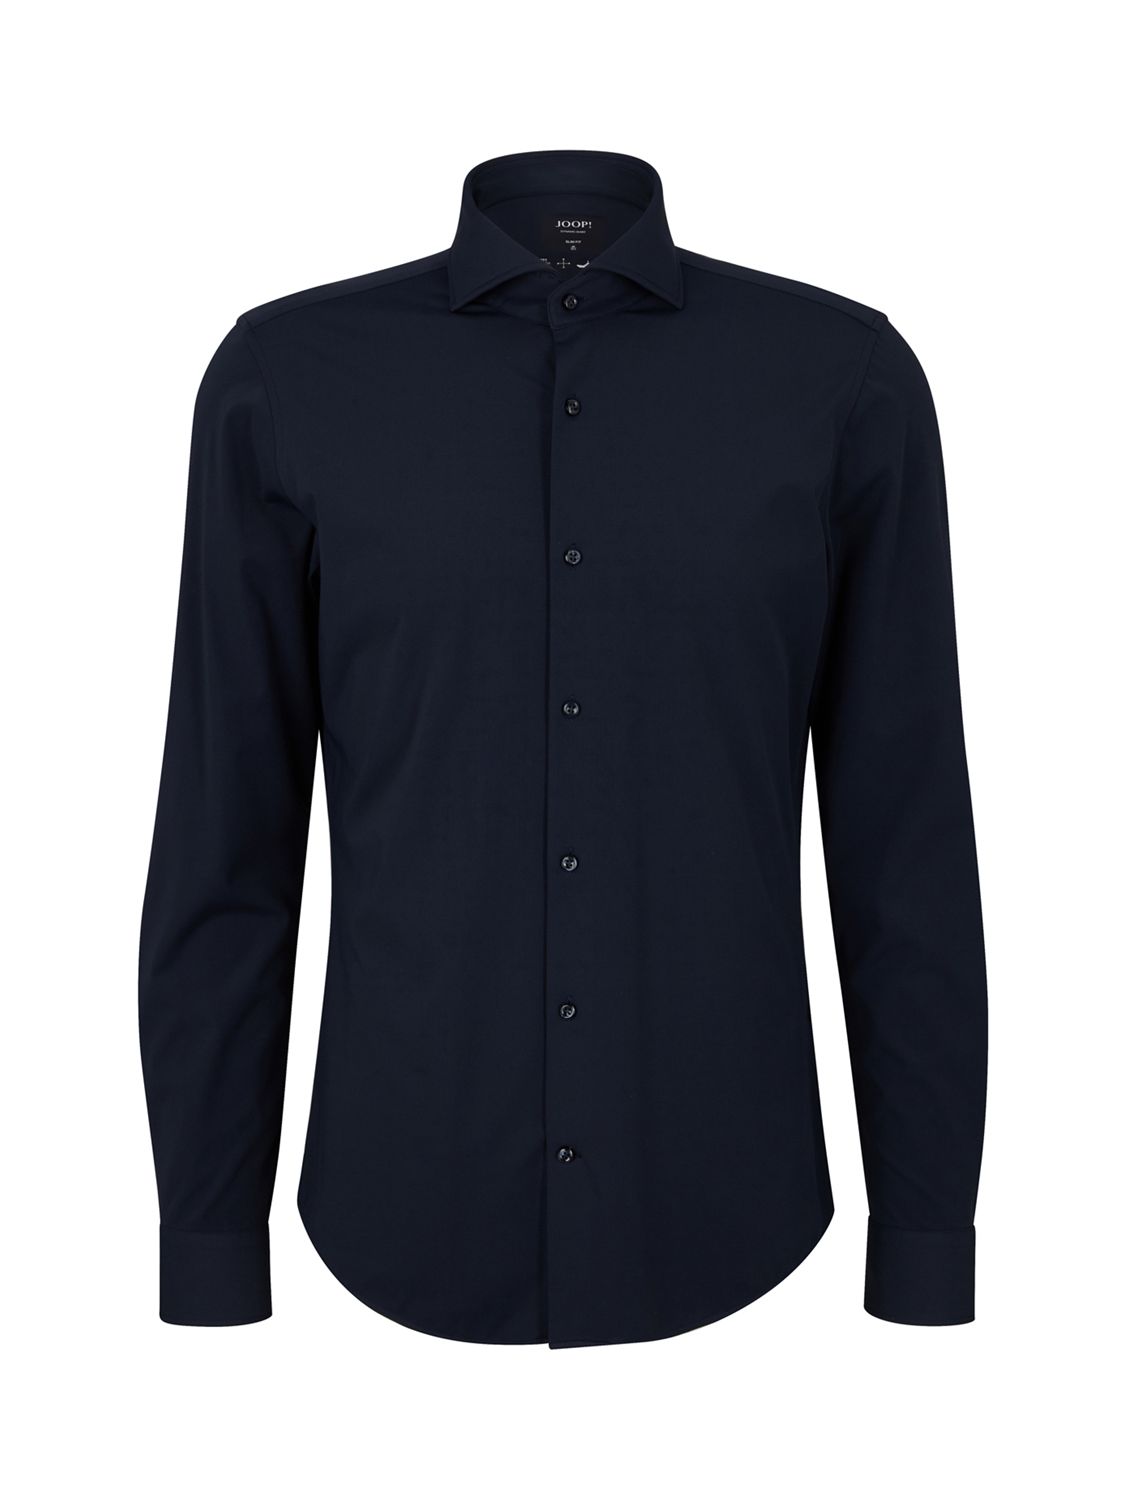 JOOP! Pai Long Sleeve Shirt, Dark Blue at John Lewis & Partners